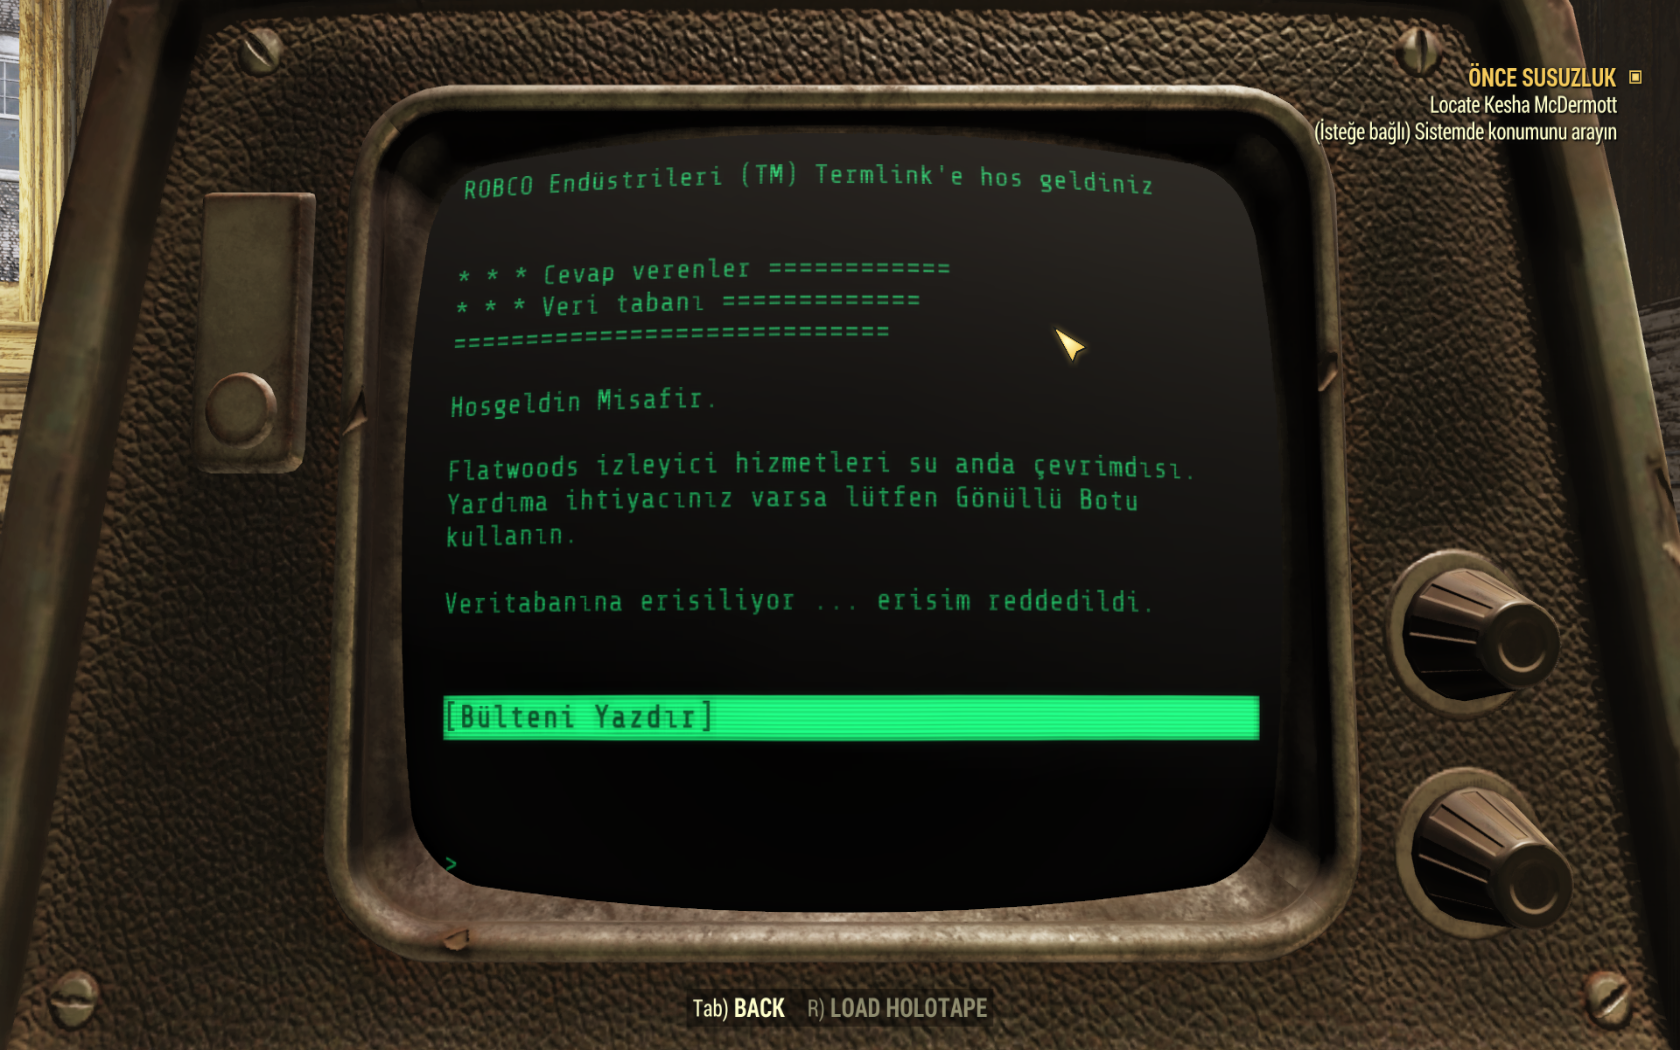 Fallout 76 Türkçe Yama Çalışması (Arşiv)